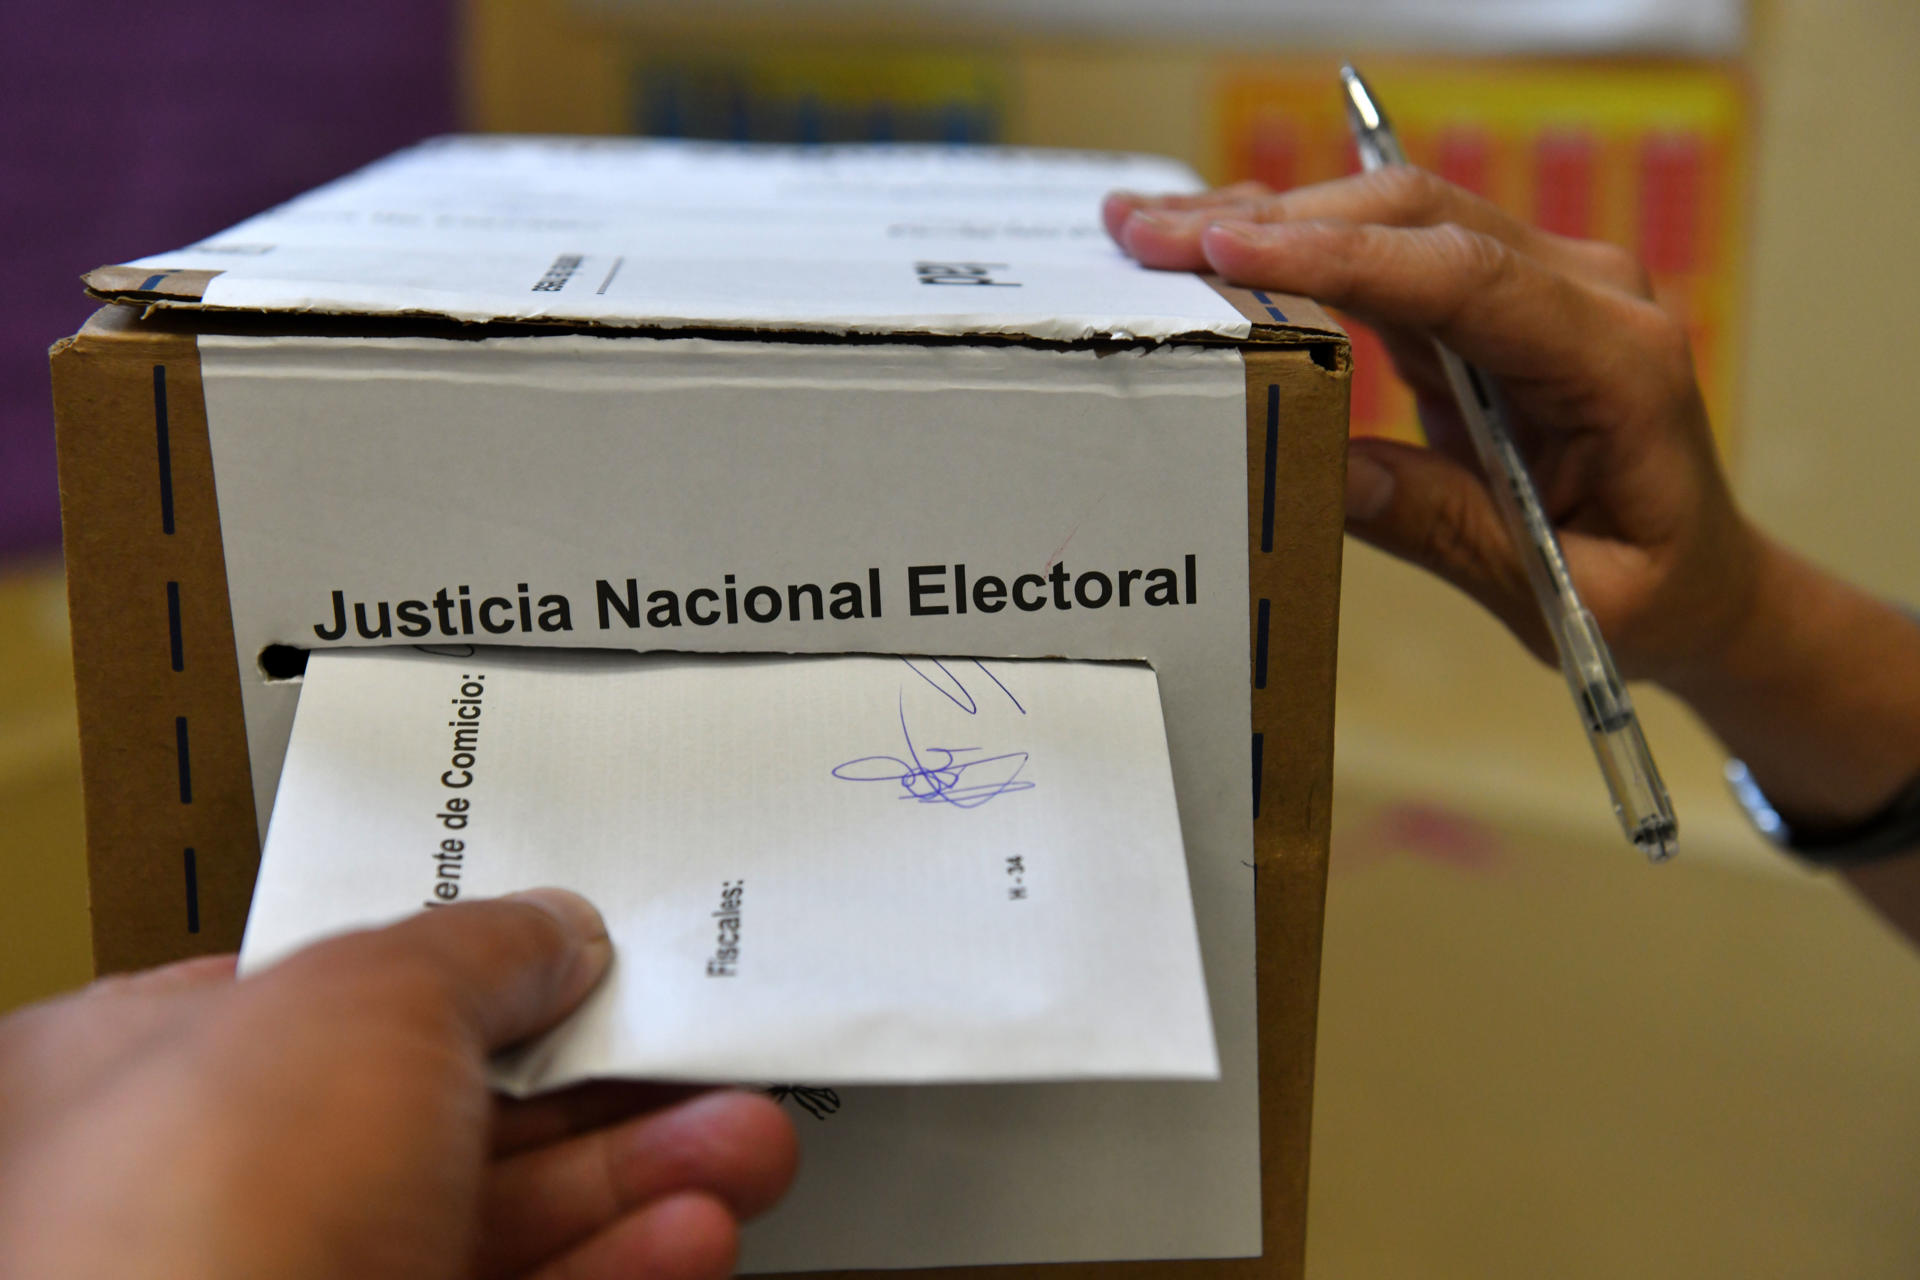 Participación al cierre de los colegios en Argentina alcanzó el 74 % del padrón electoral